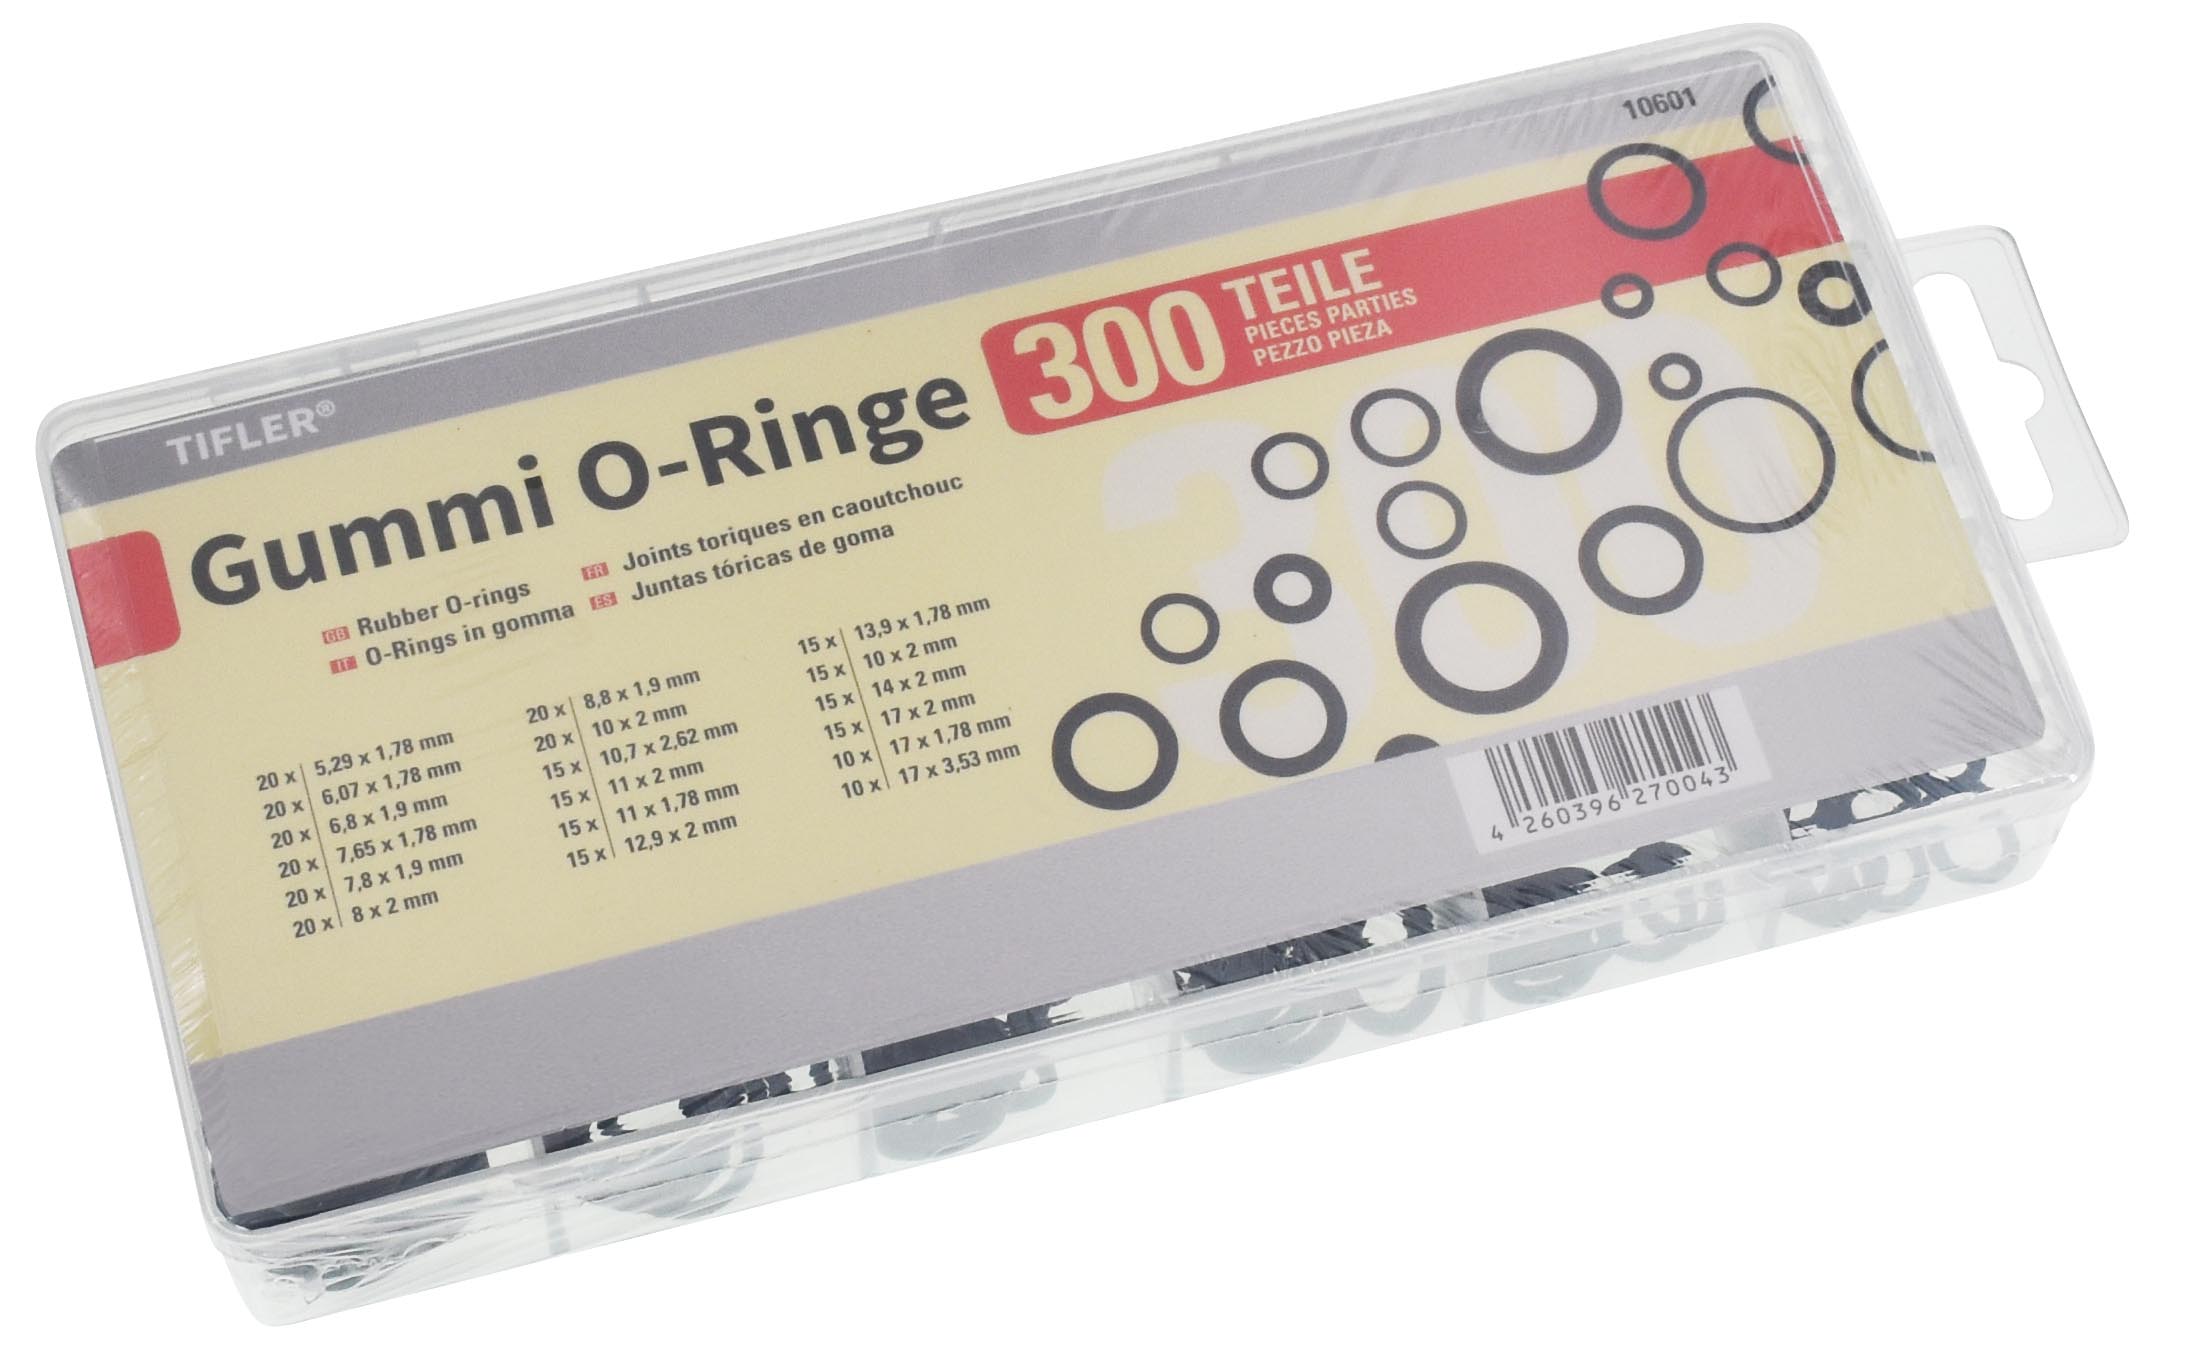 So wird das Tifler Gummi O-Ringe Sortiment mit 225 Teilen geliefert.